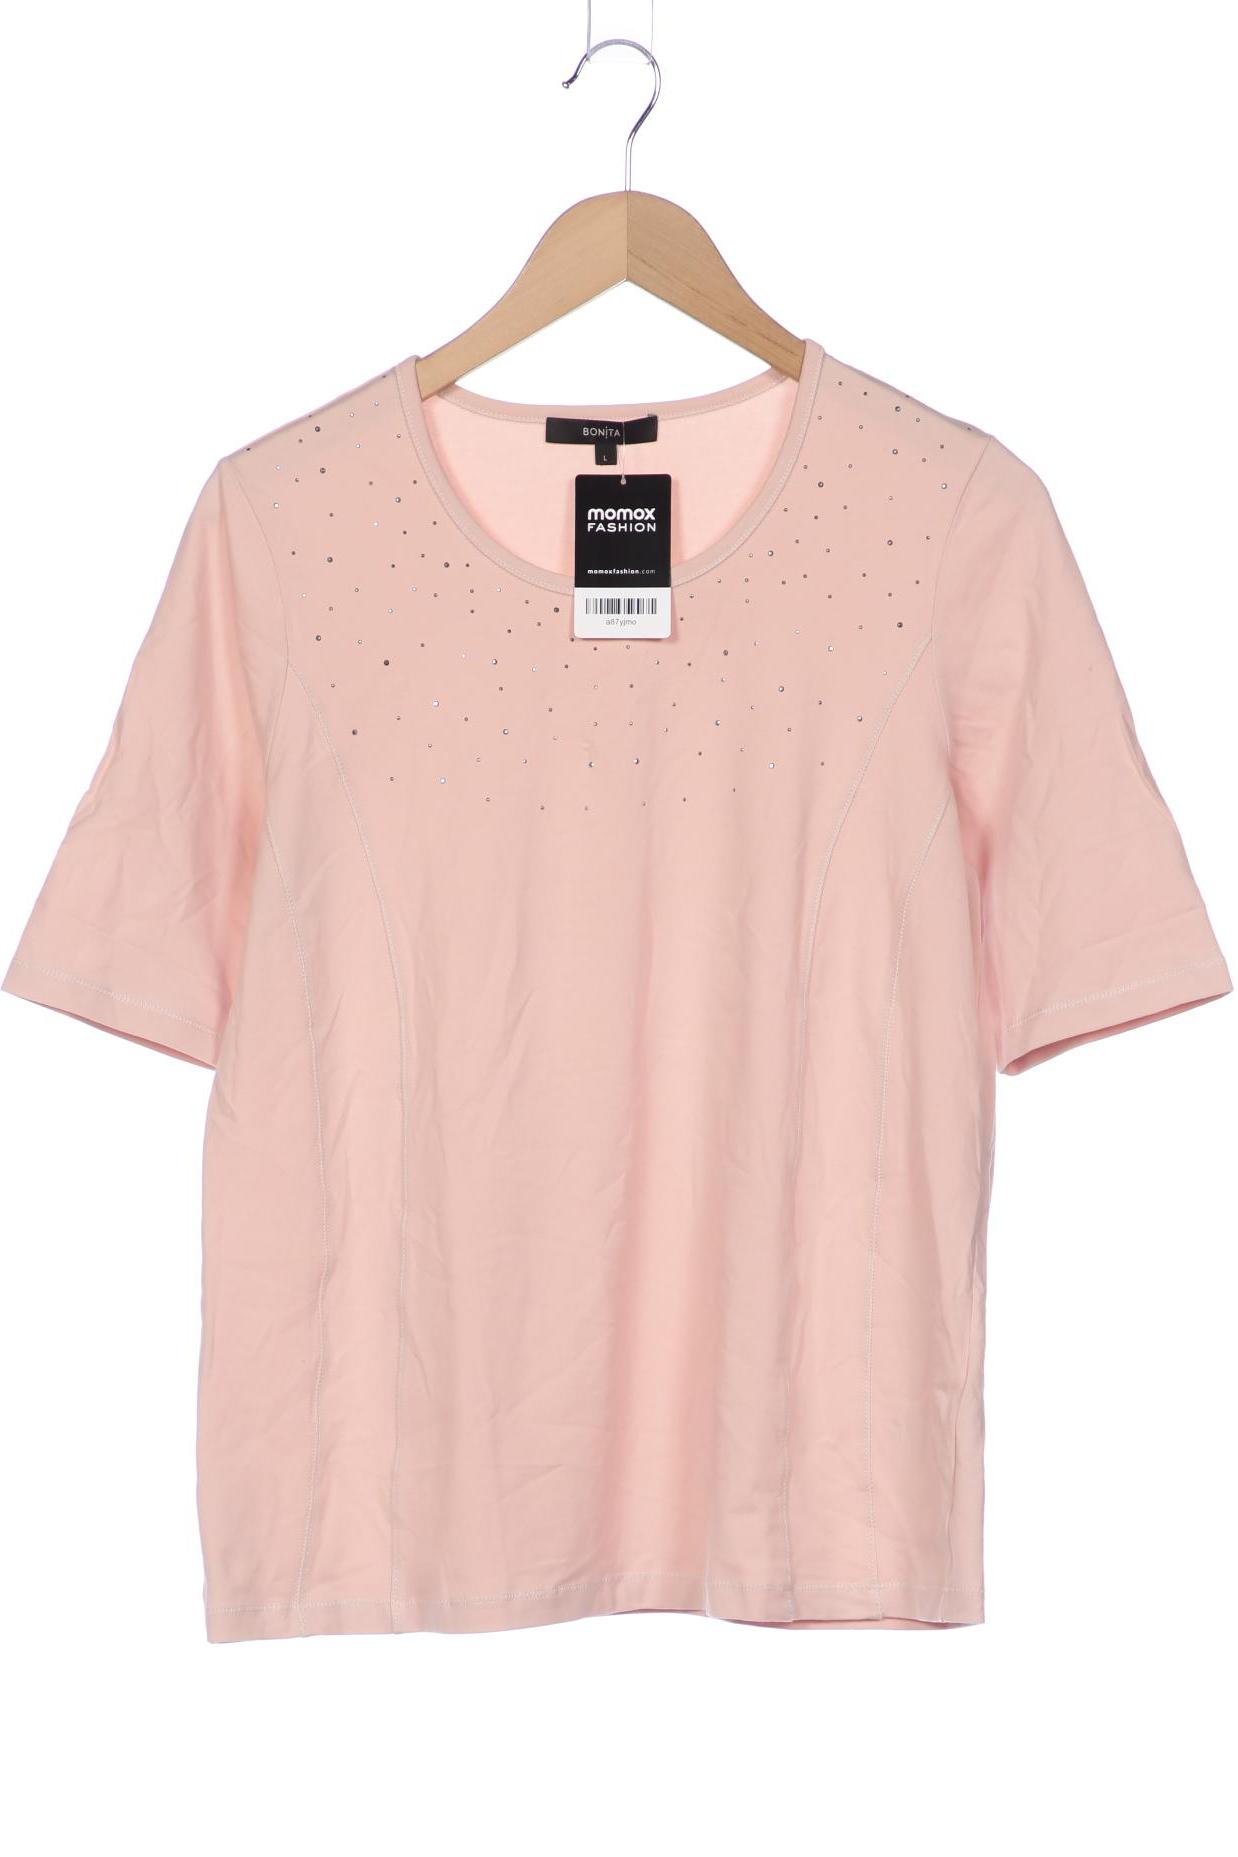 Bonita Damen T-Shirt, pink von bonita